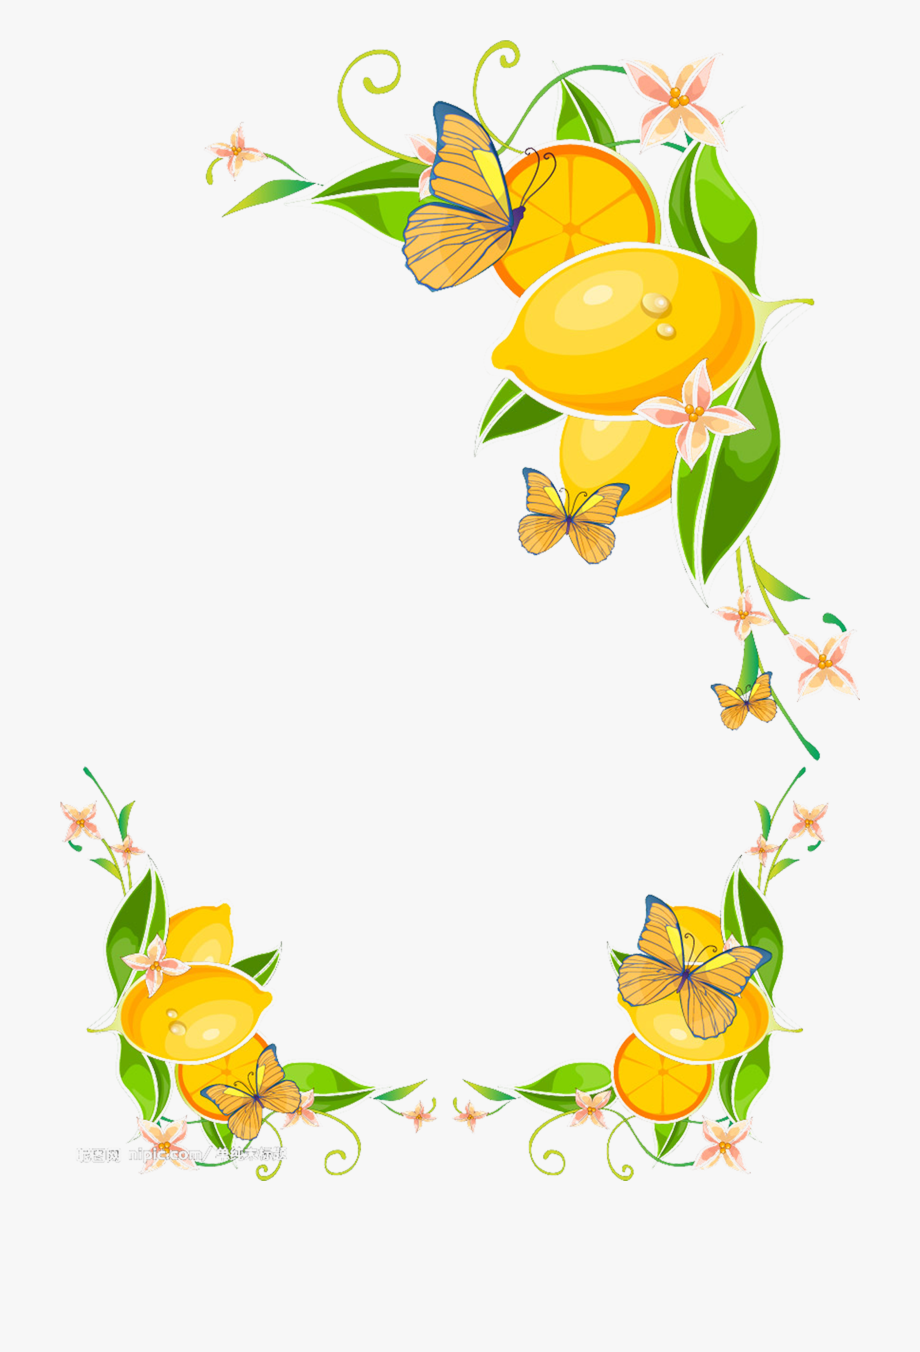 lemons clipart border